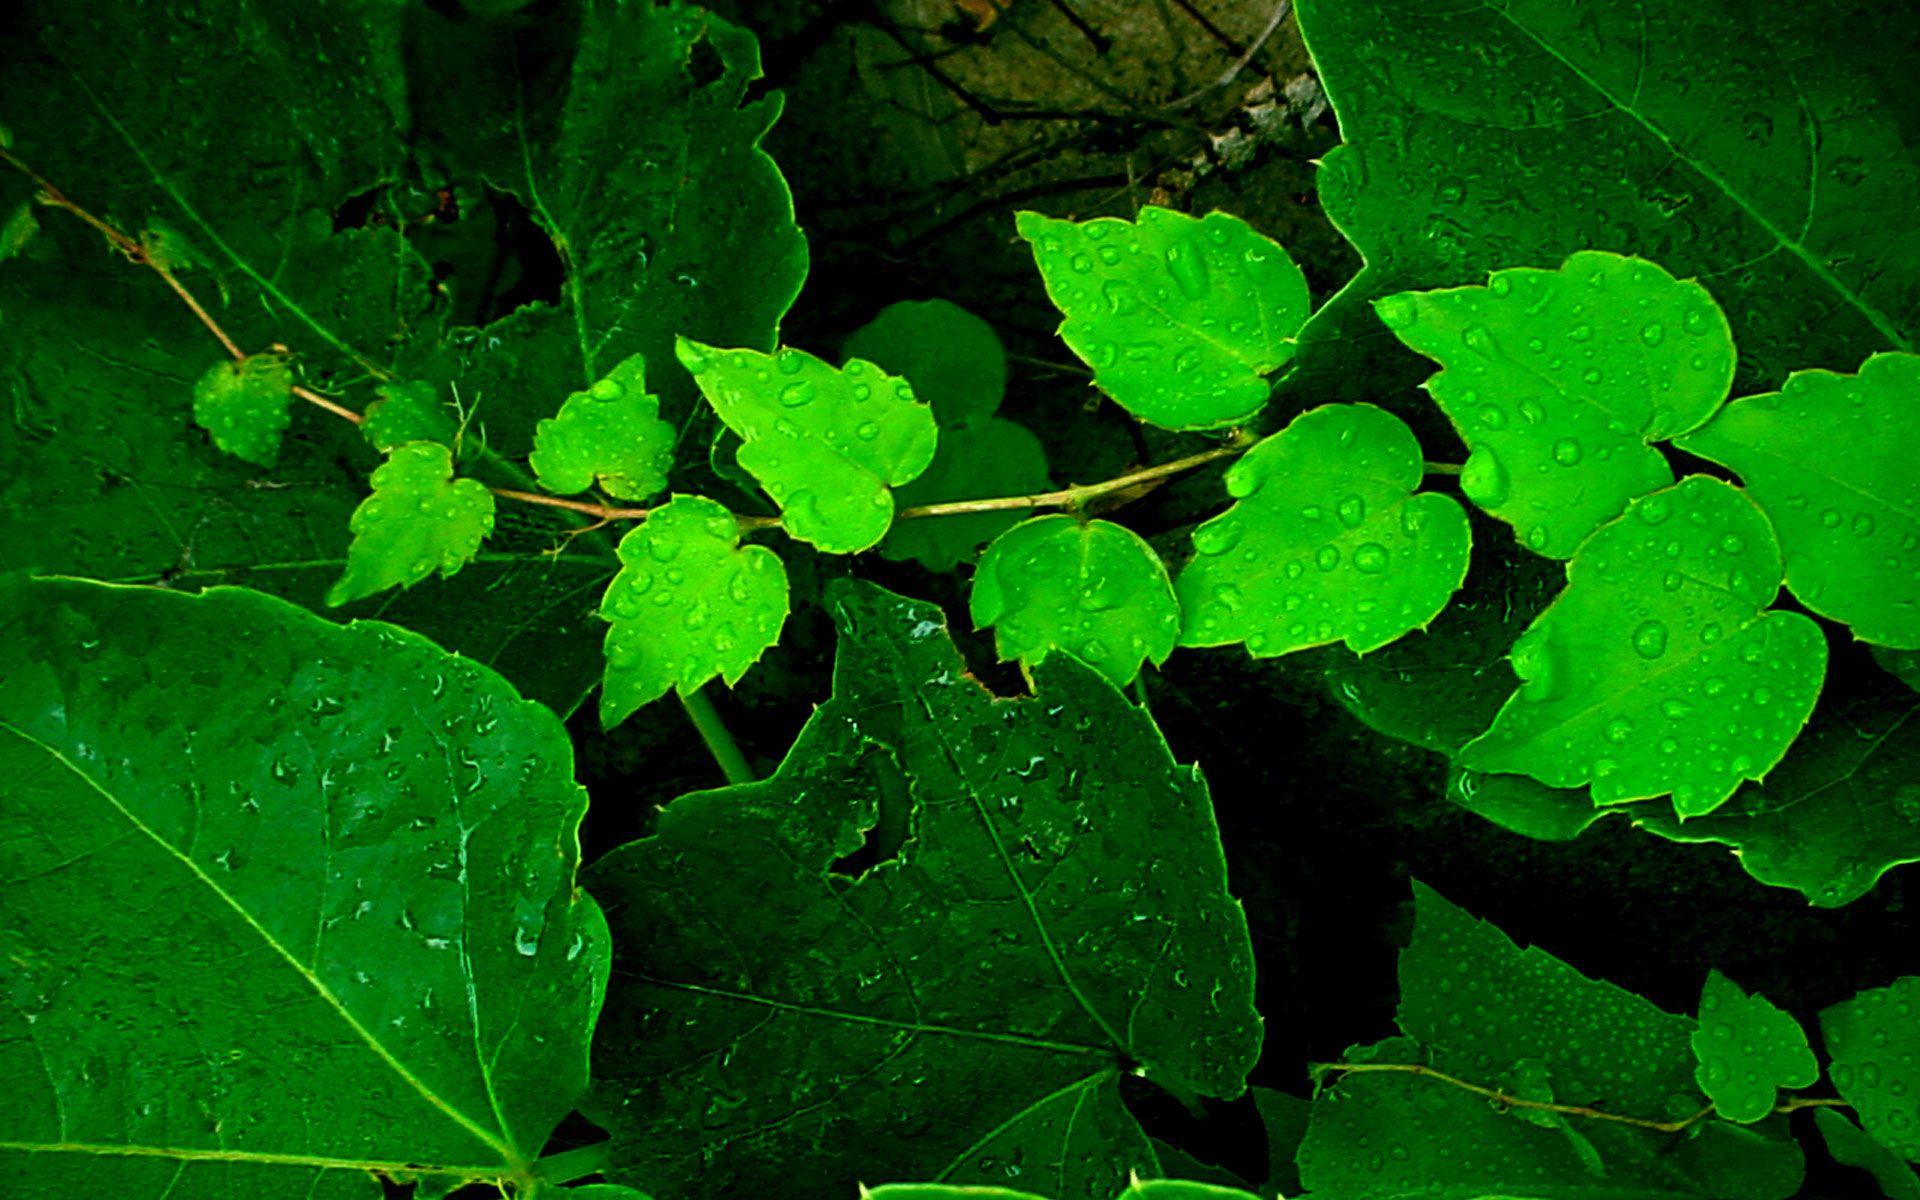 Green Leaves Wallpaper, Green Leaves Image for Desktop